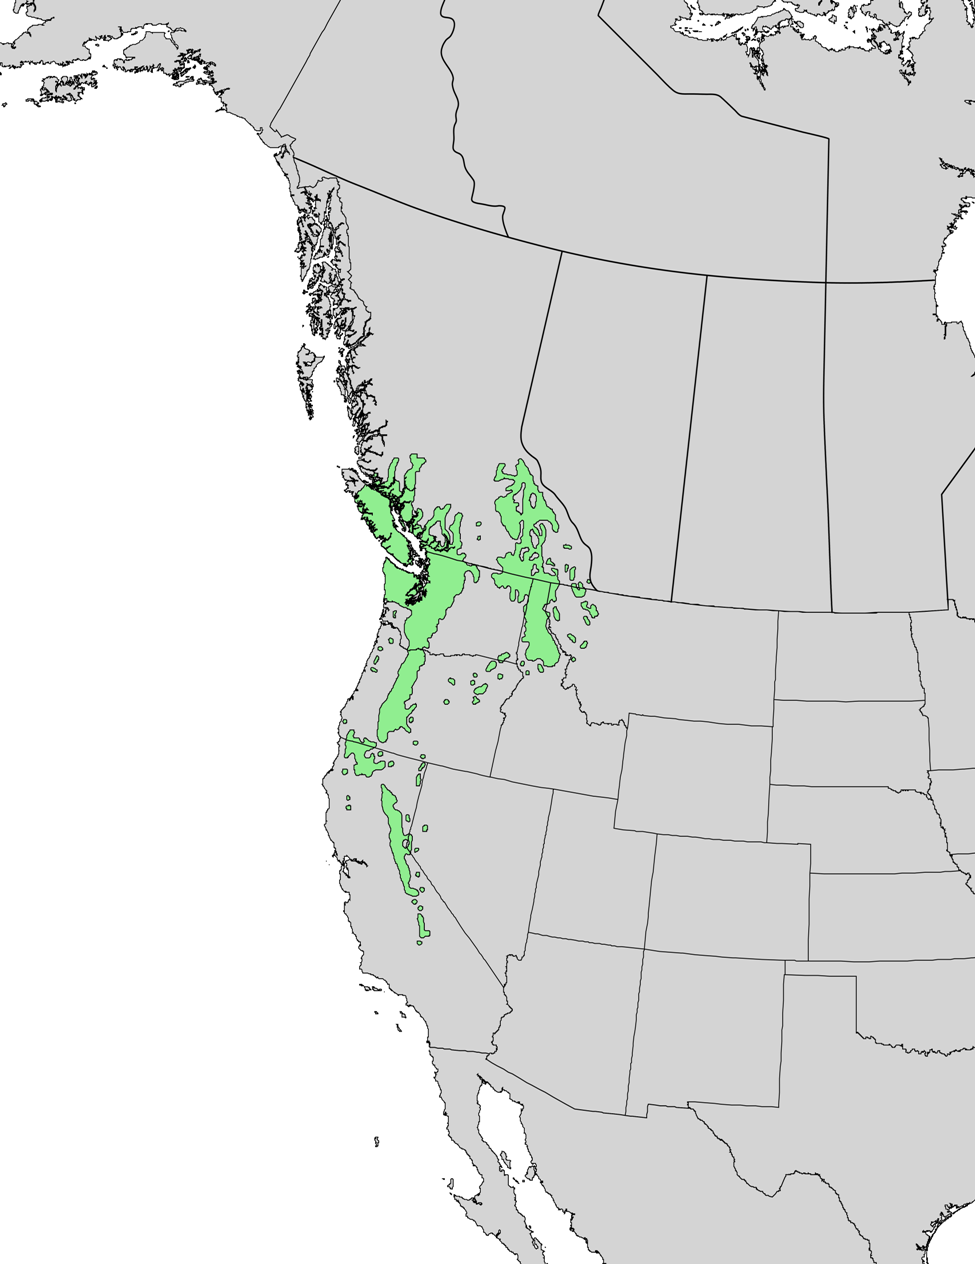 Ареал P. monticola. Как видите, это крайний юго-восток Канады (Британская Колумбия) и крайний запад США (Монтана, Айдахо, Вашингтон, Орегон, Калифорния). В физико-географическом смысле это Прибрежные хребты и мягкая в климатическом отношении часть Скалистых гор. 